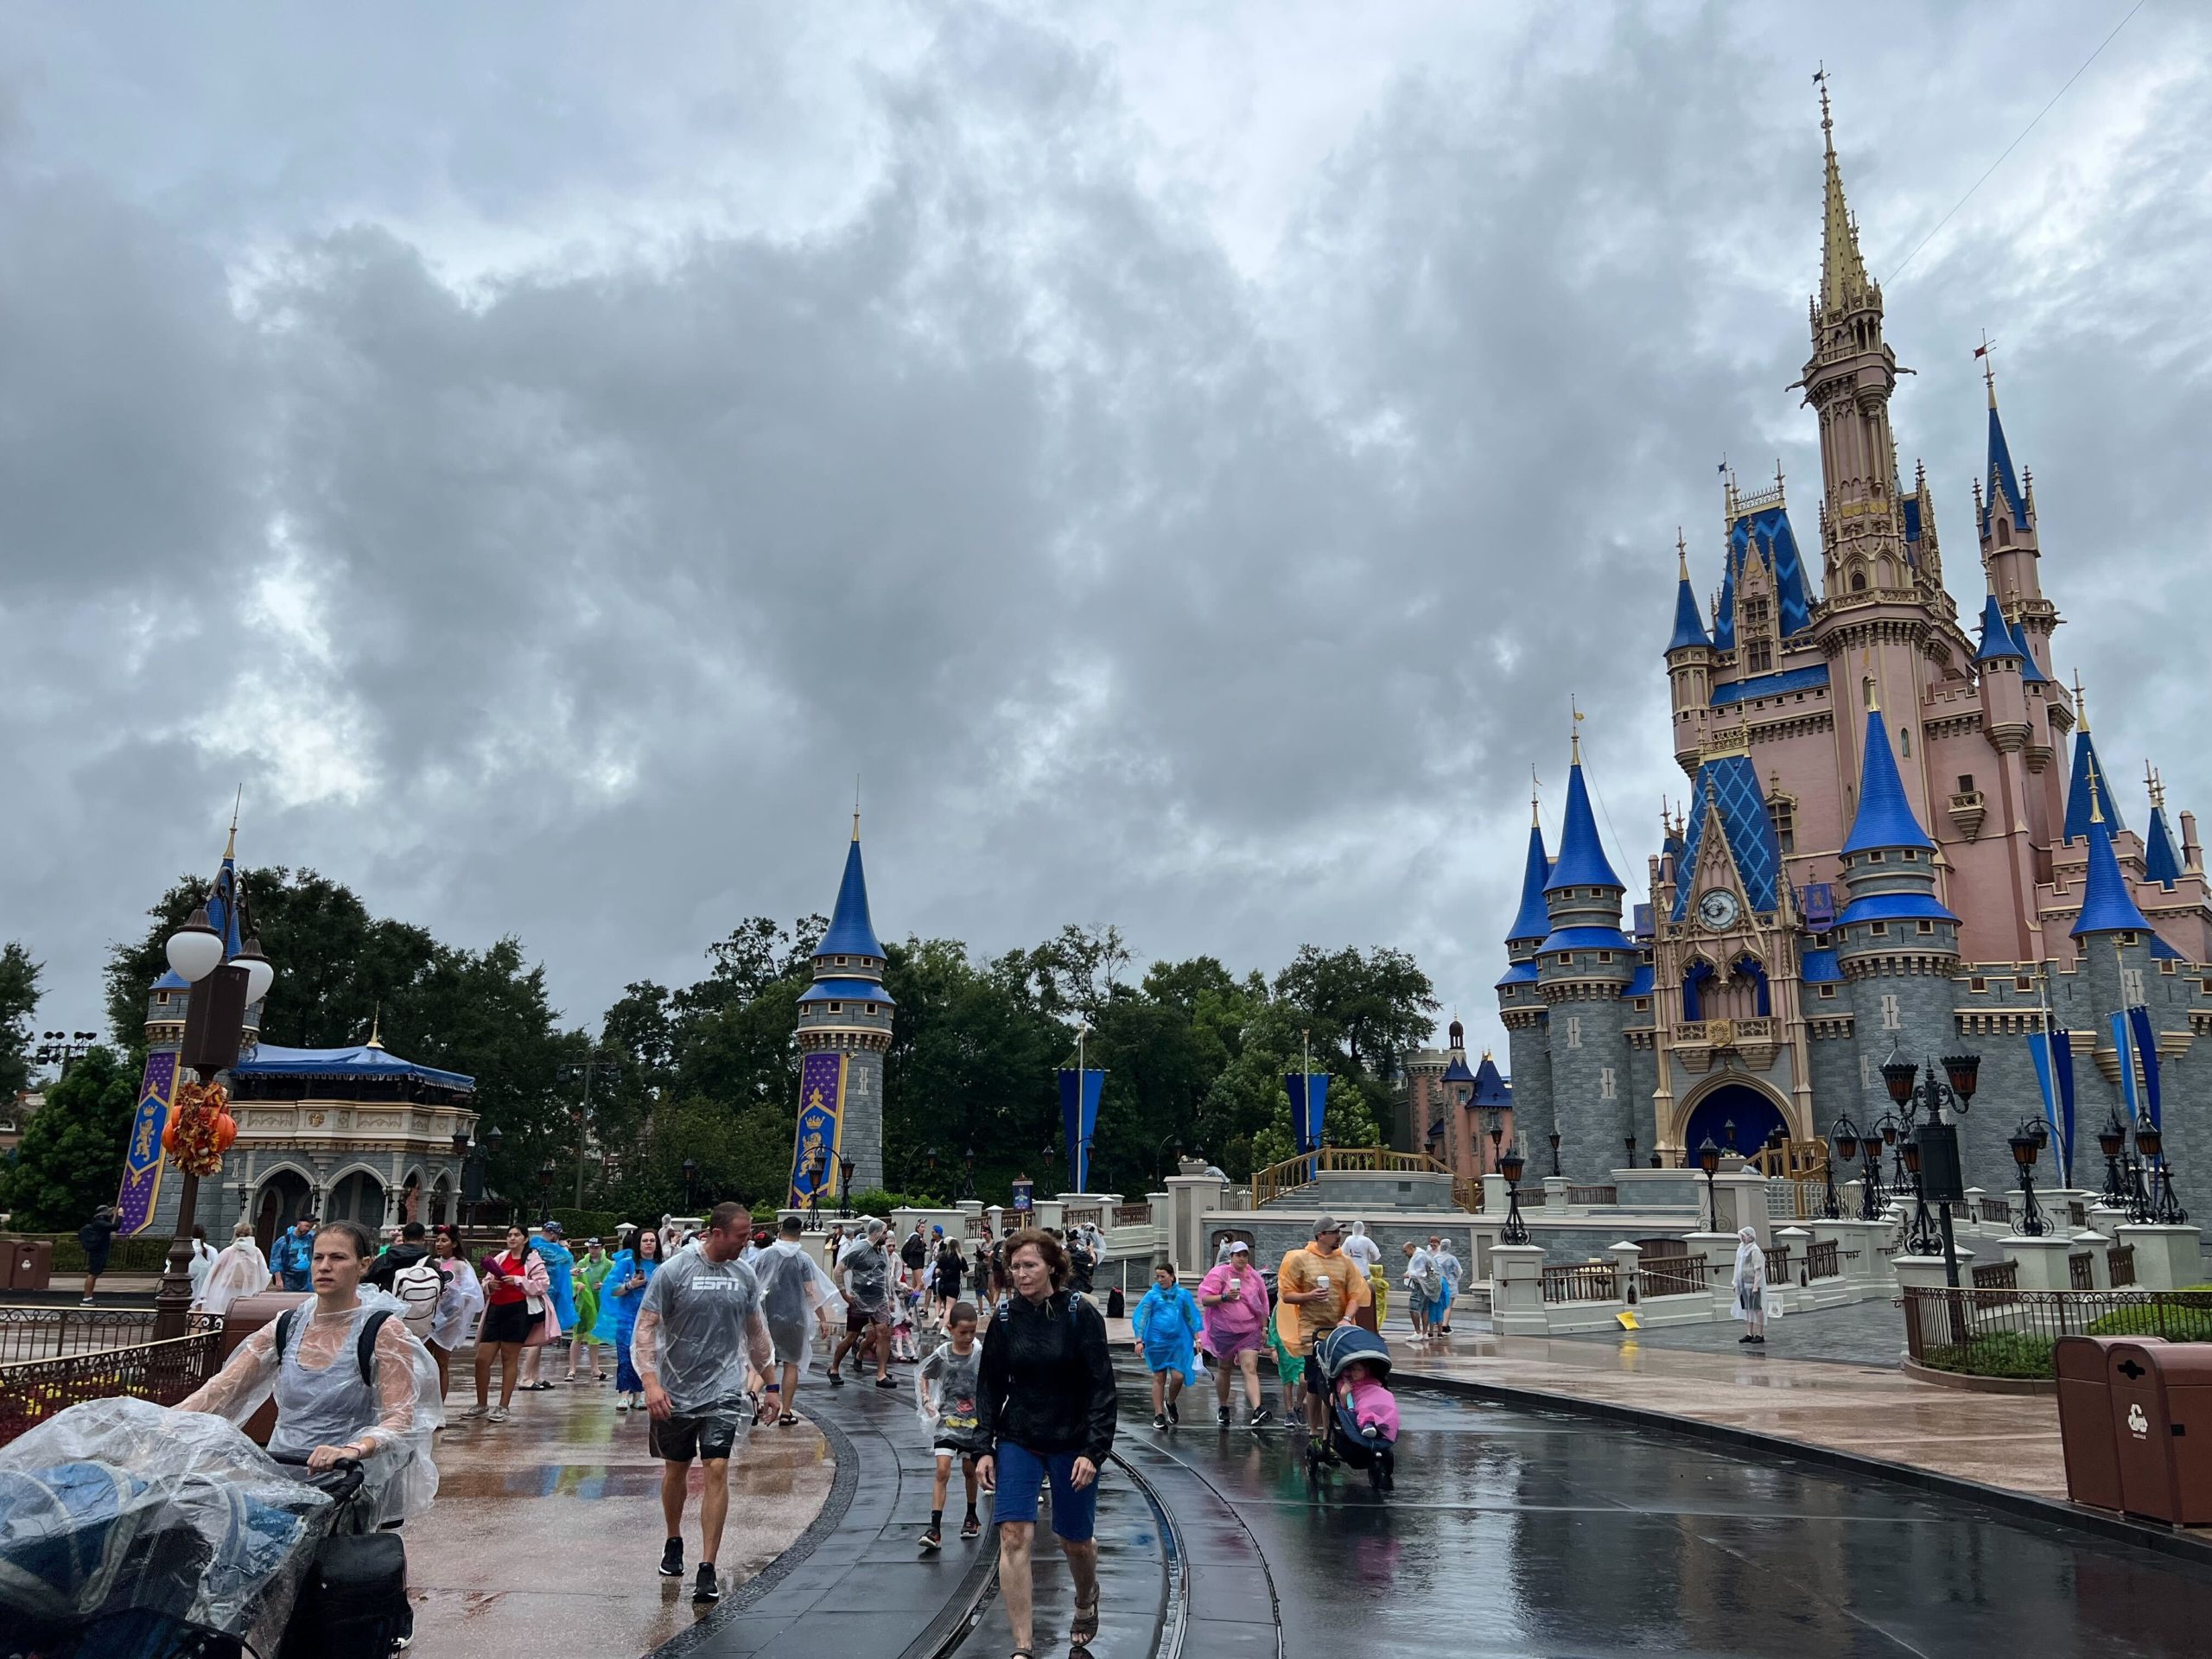 Rain Magic Kingdom